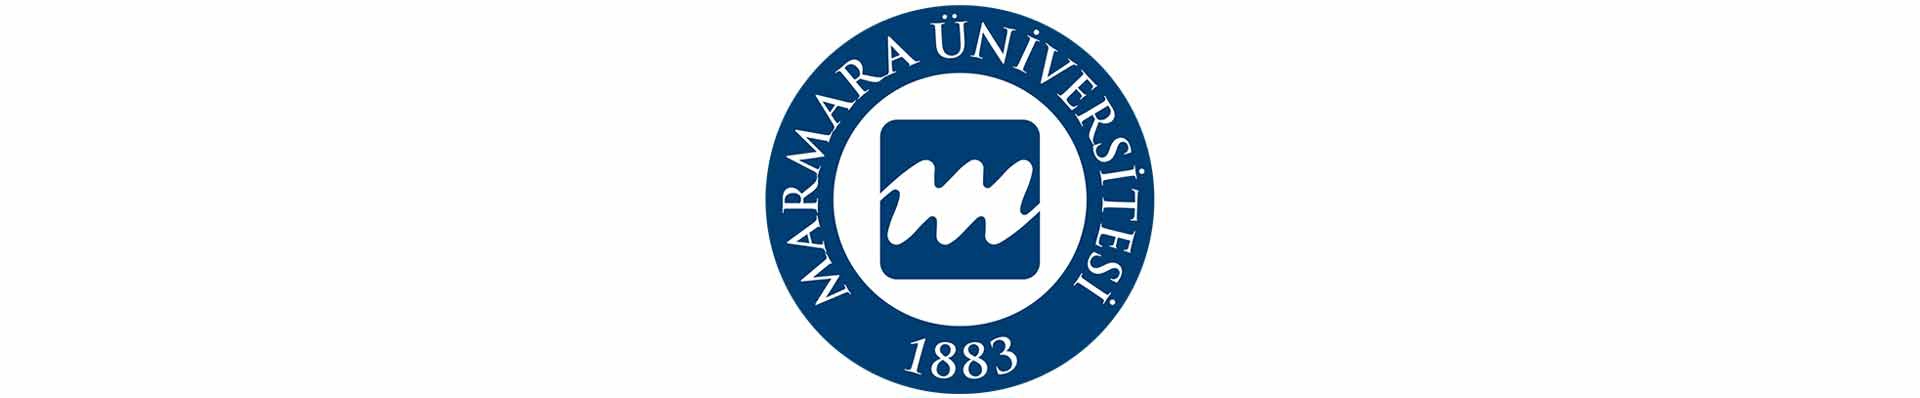 آزمون یوس دانشگاه مارمارا (Marmara University)